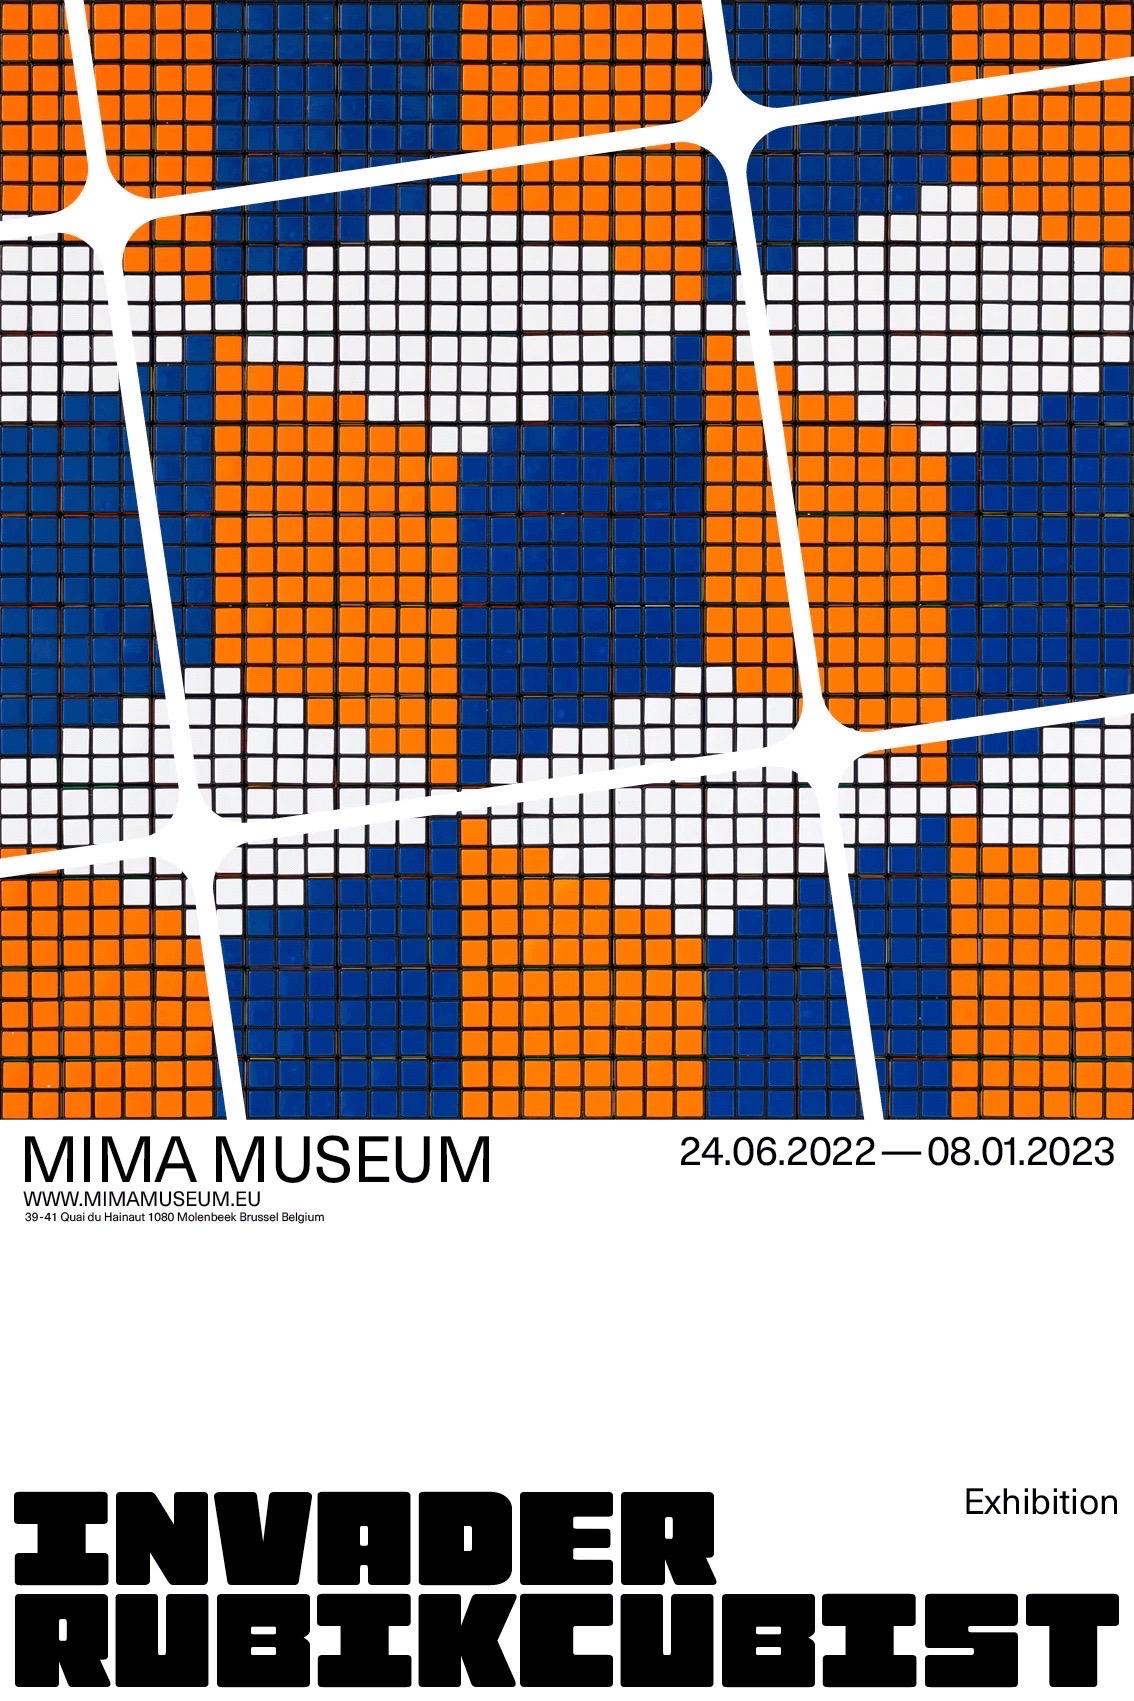 Invader, Rubikkubistisches MIMA-Poster, 2022

Farbige Offsetlithografie auf 130 g/m² Arctic Volume Silk-Posterpapier aus der MIMA-Galerieausstellung von Invader in Brüssel  

40 x 60 cm (15,7 x 23,6 Zoll)

Offene Ausgabe